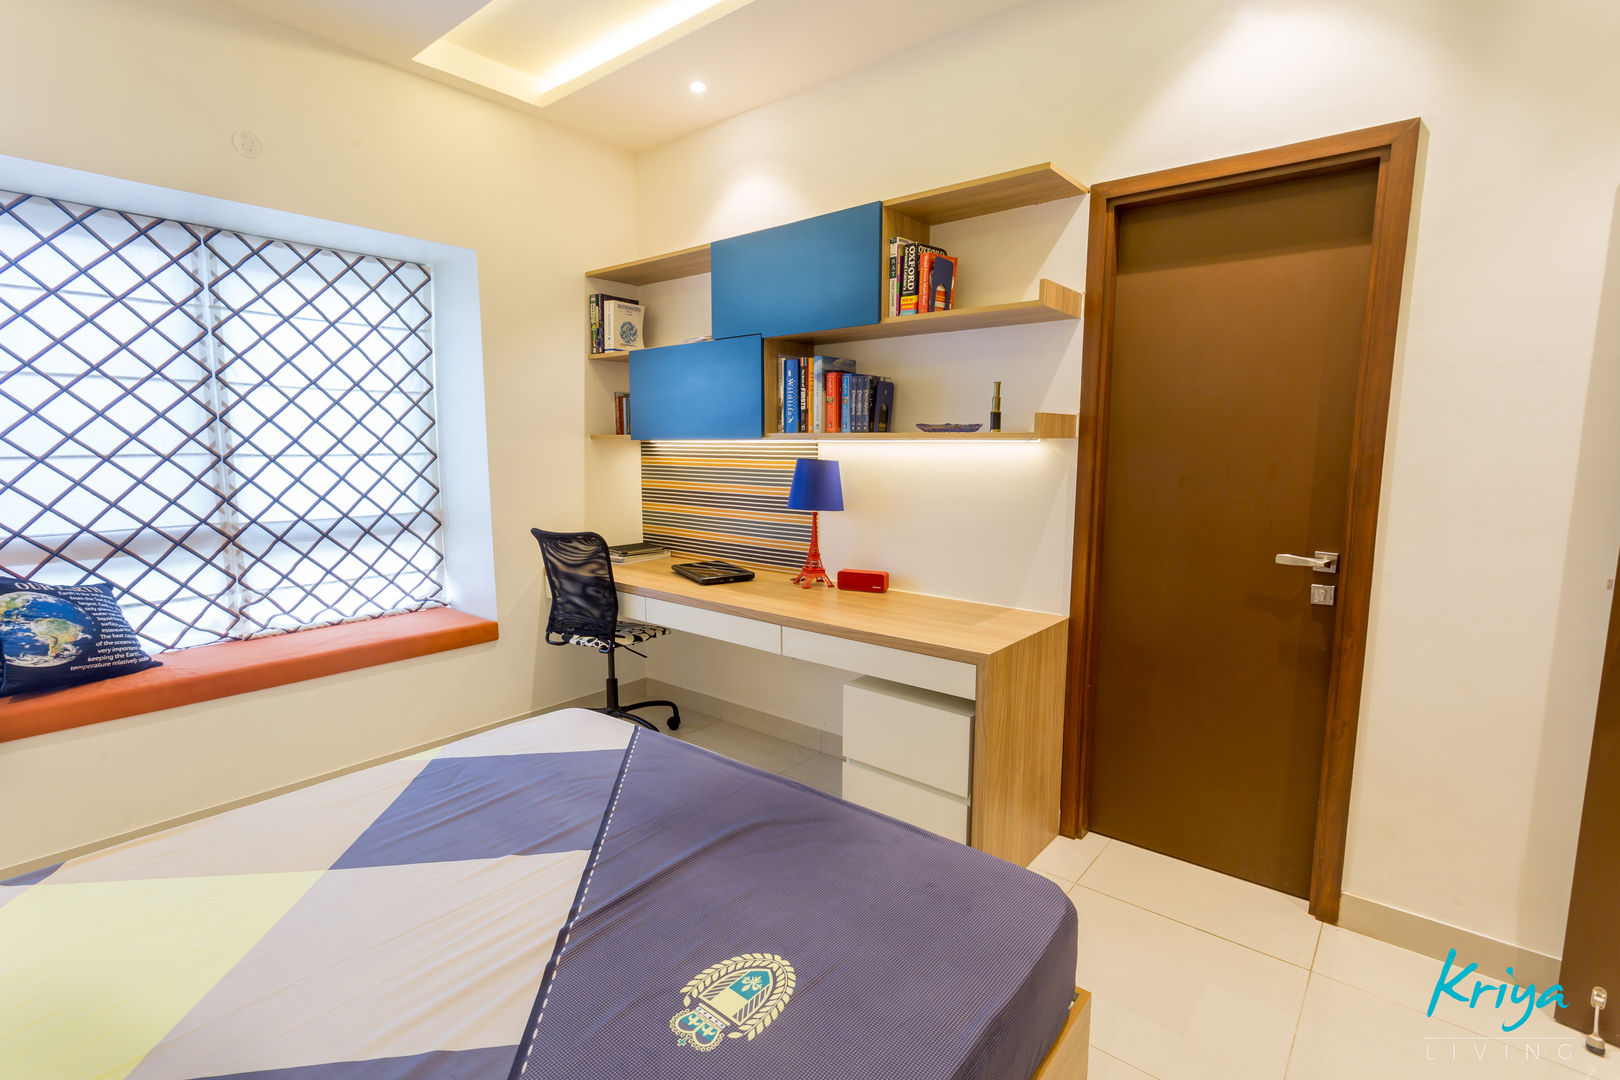 3 BHK apartment - RMZ Galleria, Bengaluru, KRIYA LIVING KRIYA LIVING Phòng ngủ phong cách hiện đại